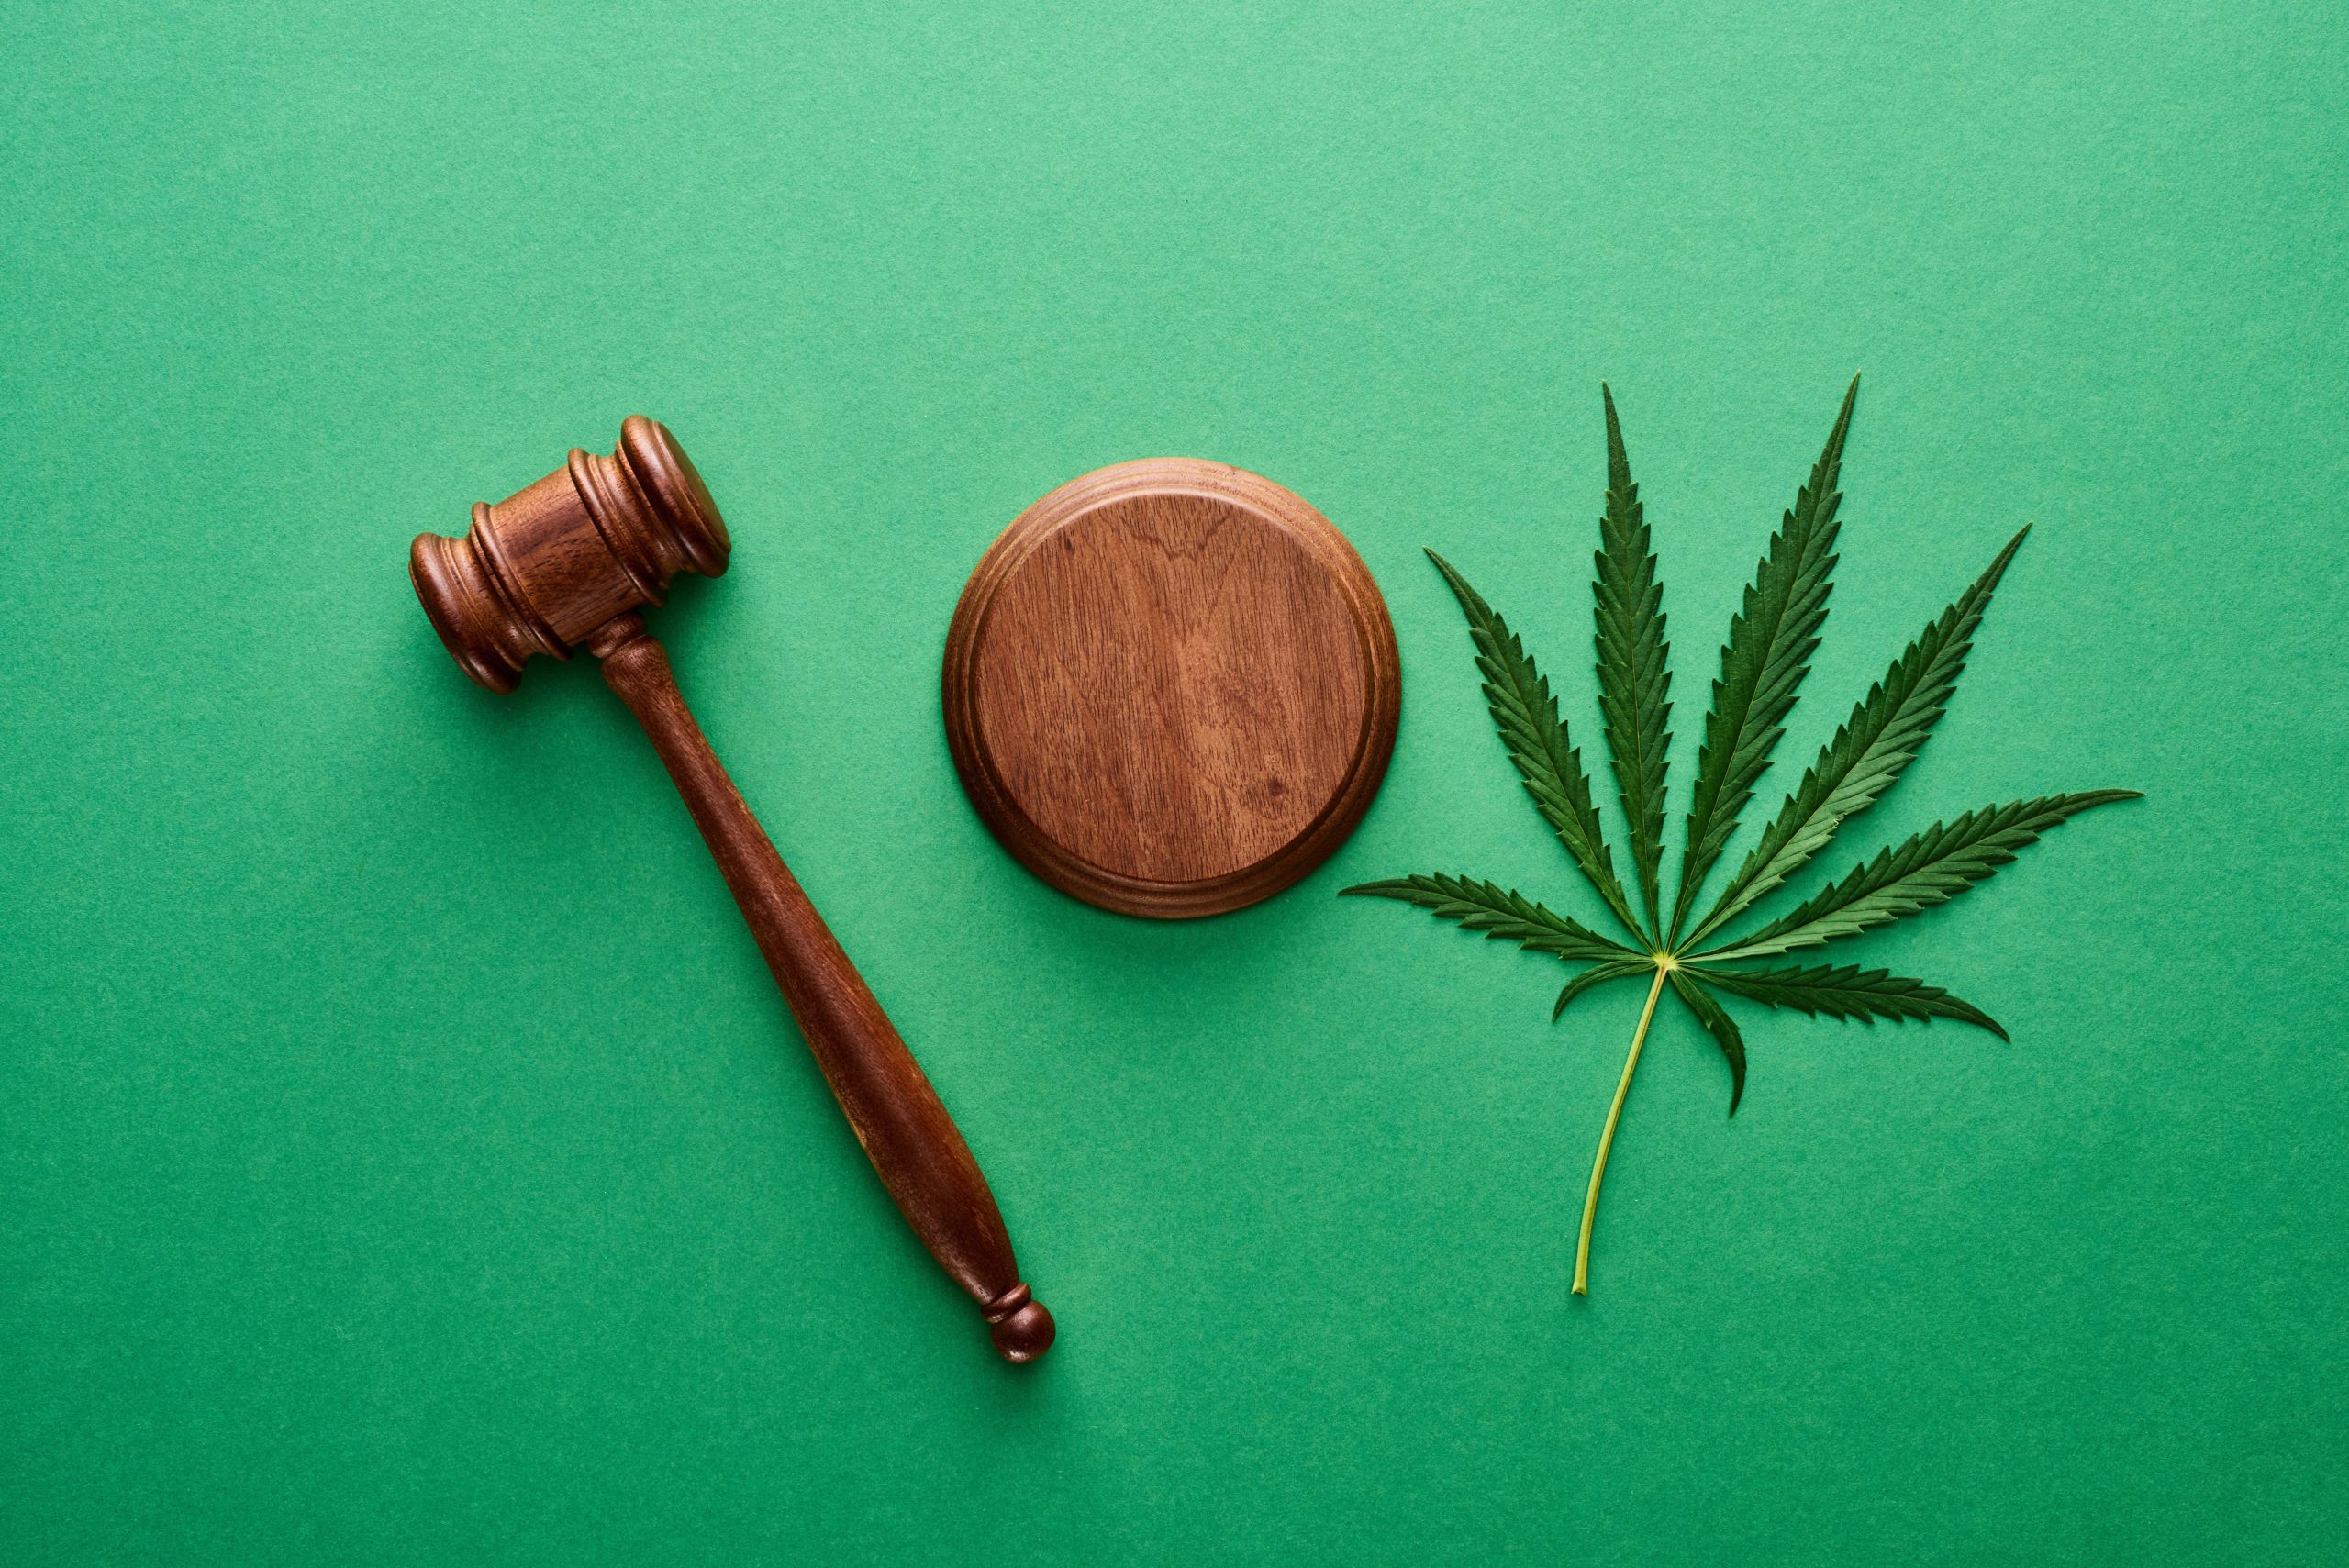 Cannabisblatt mit Richterhammer